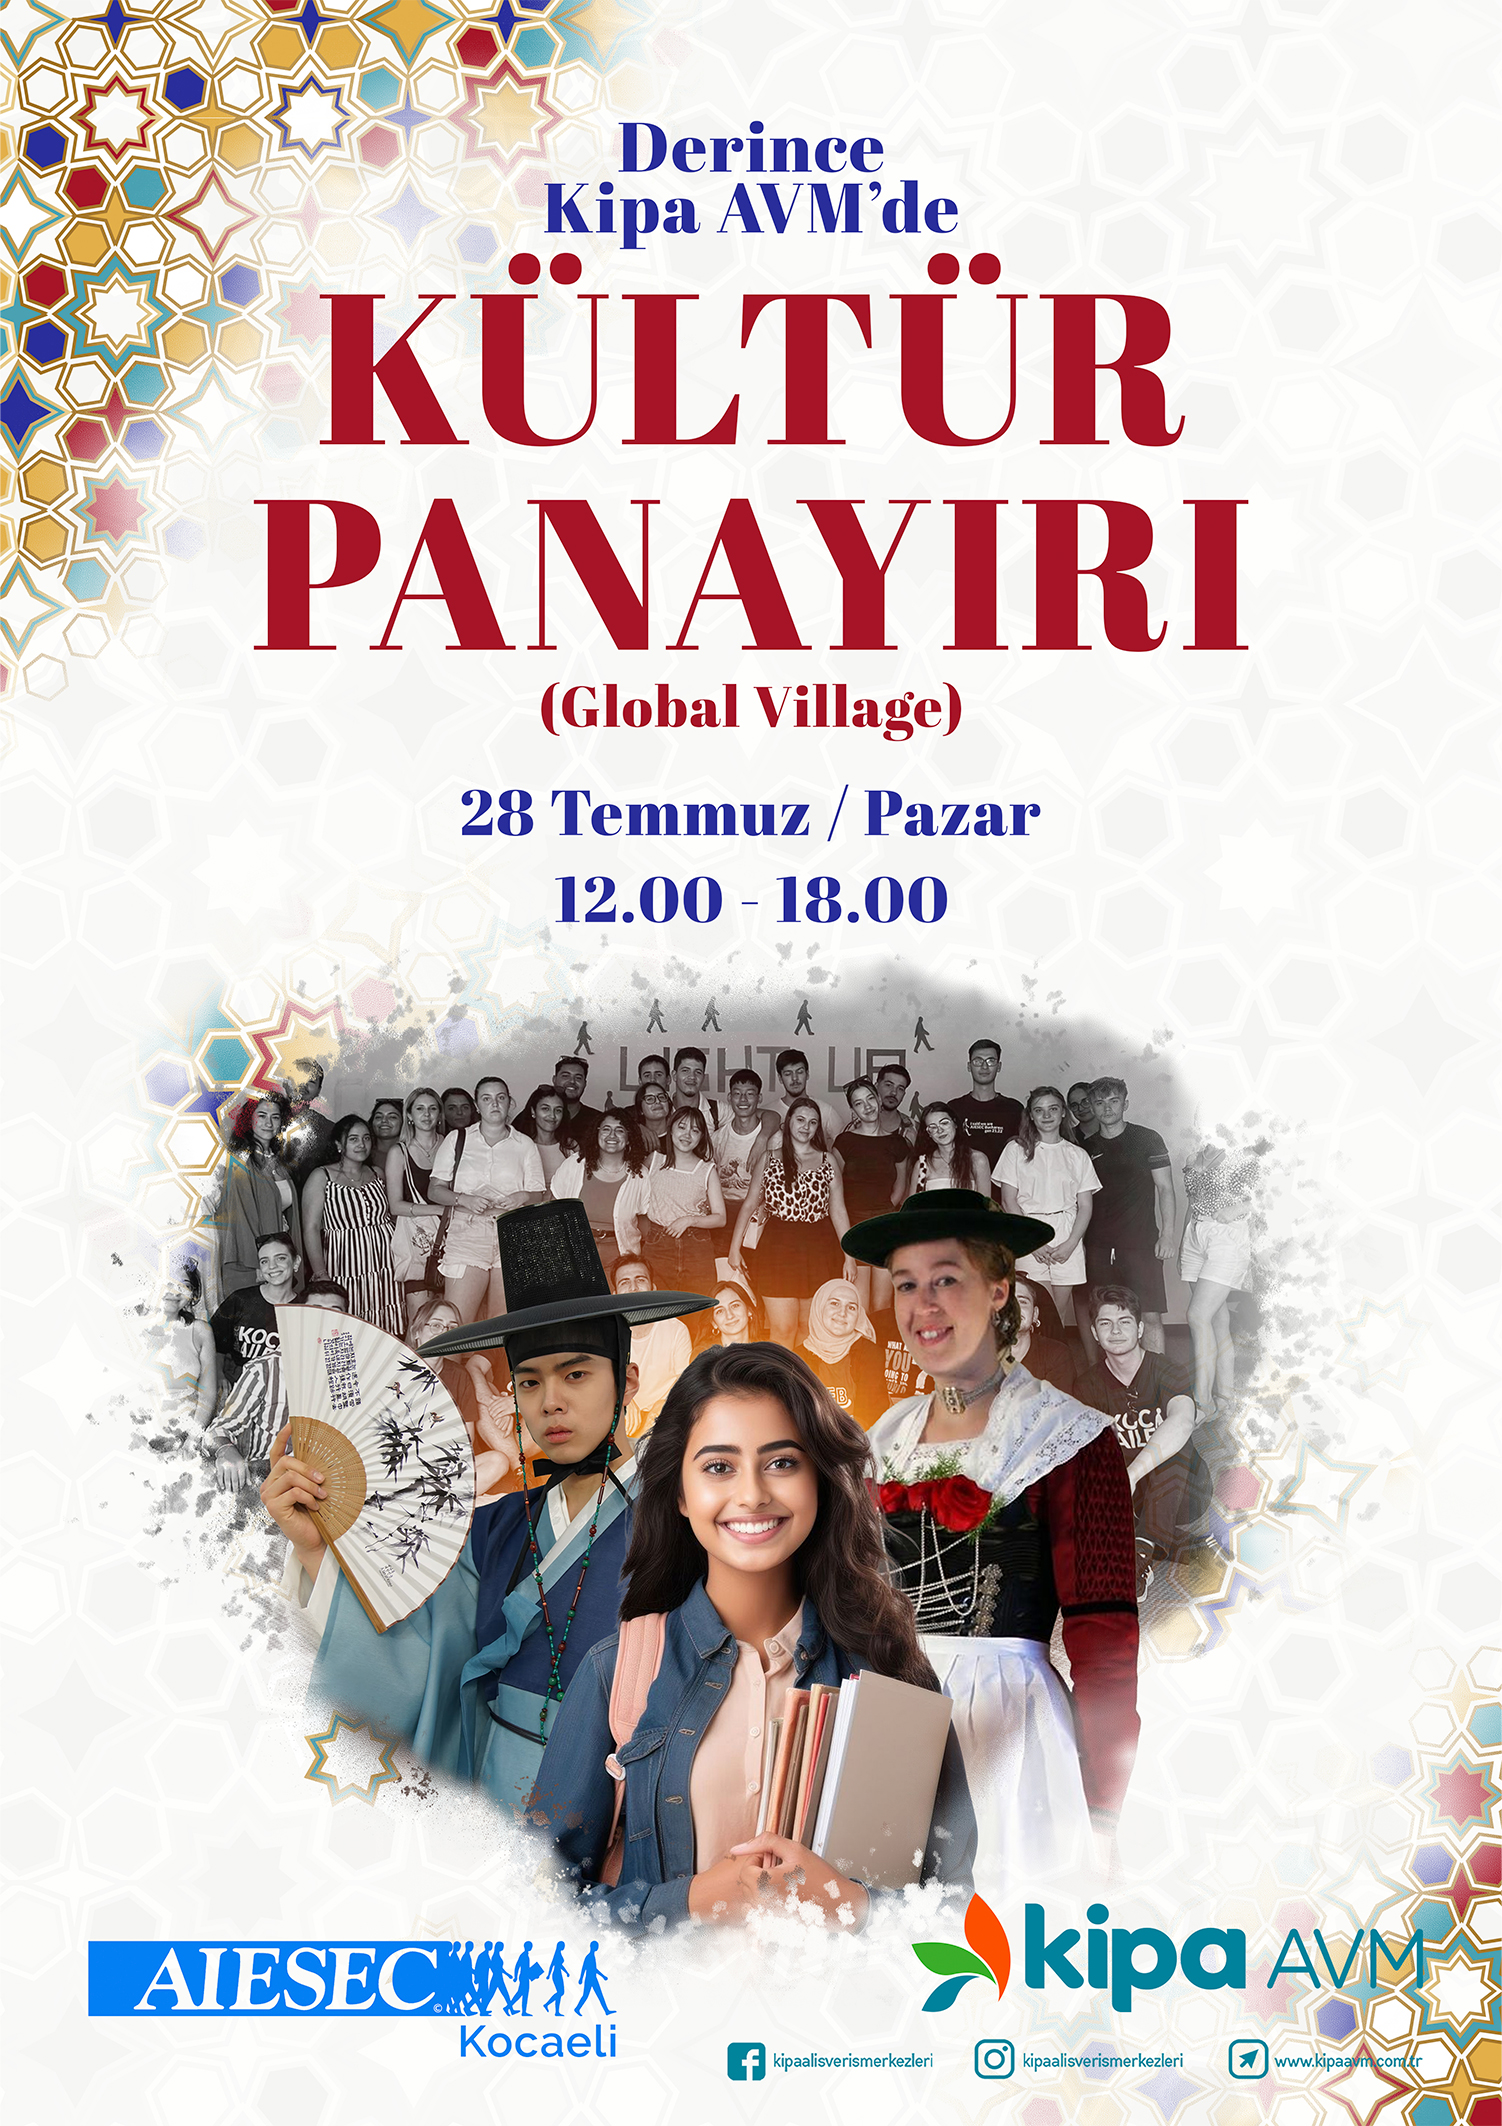 Derince Kipa AVM'de Kültür Panayırı!